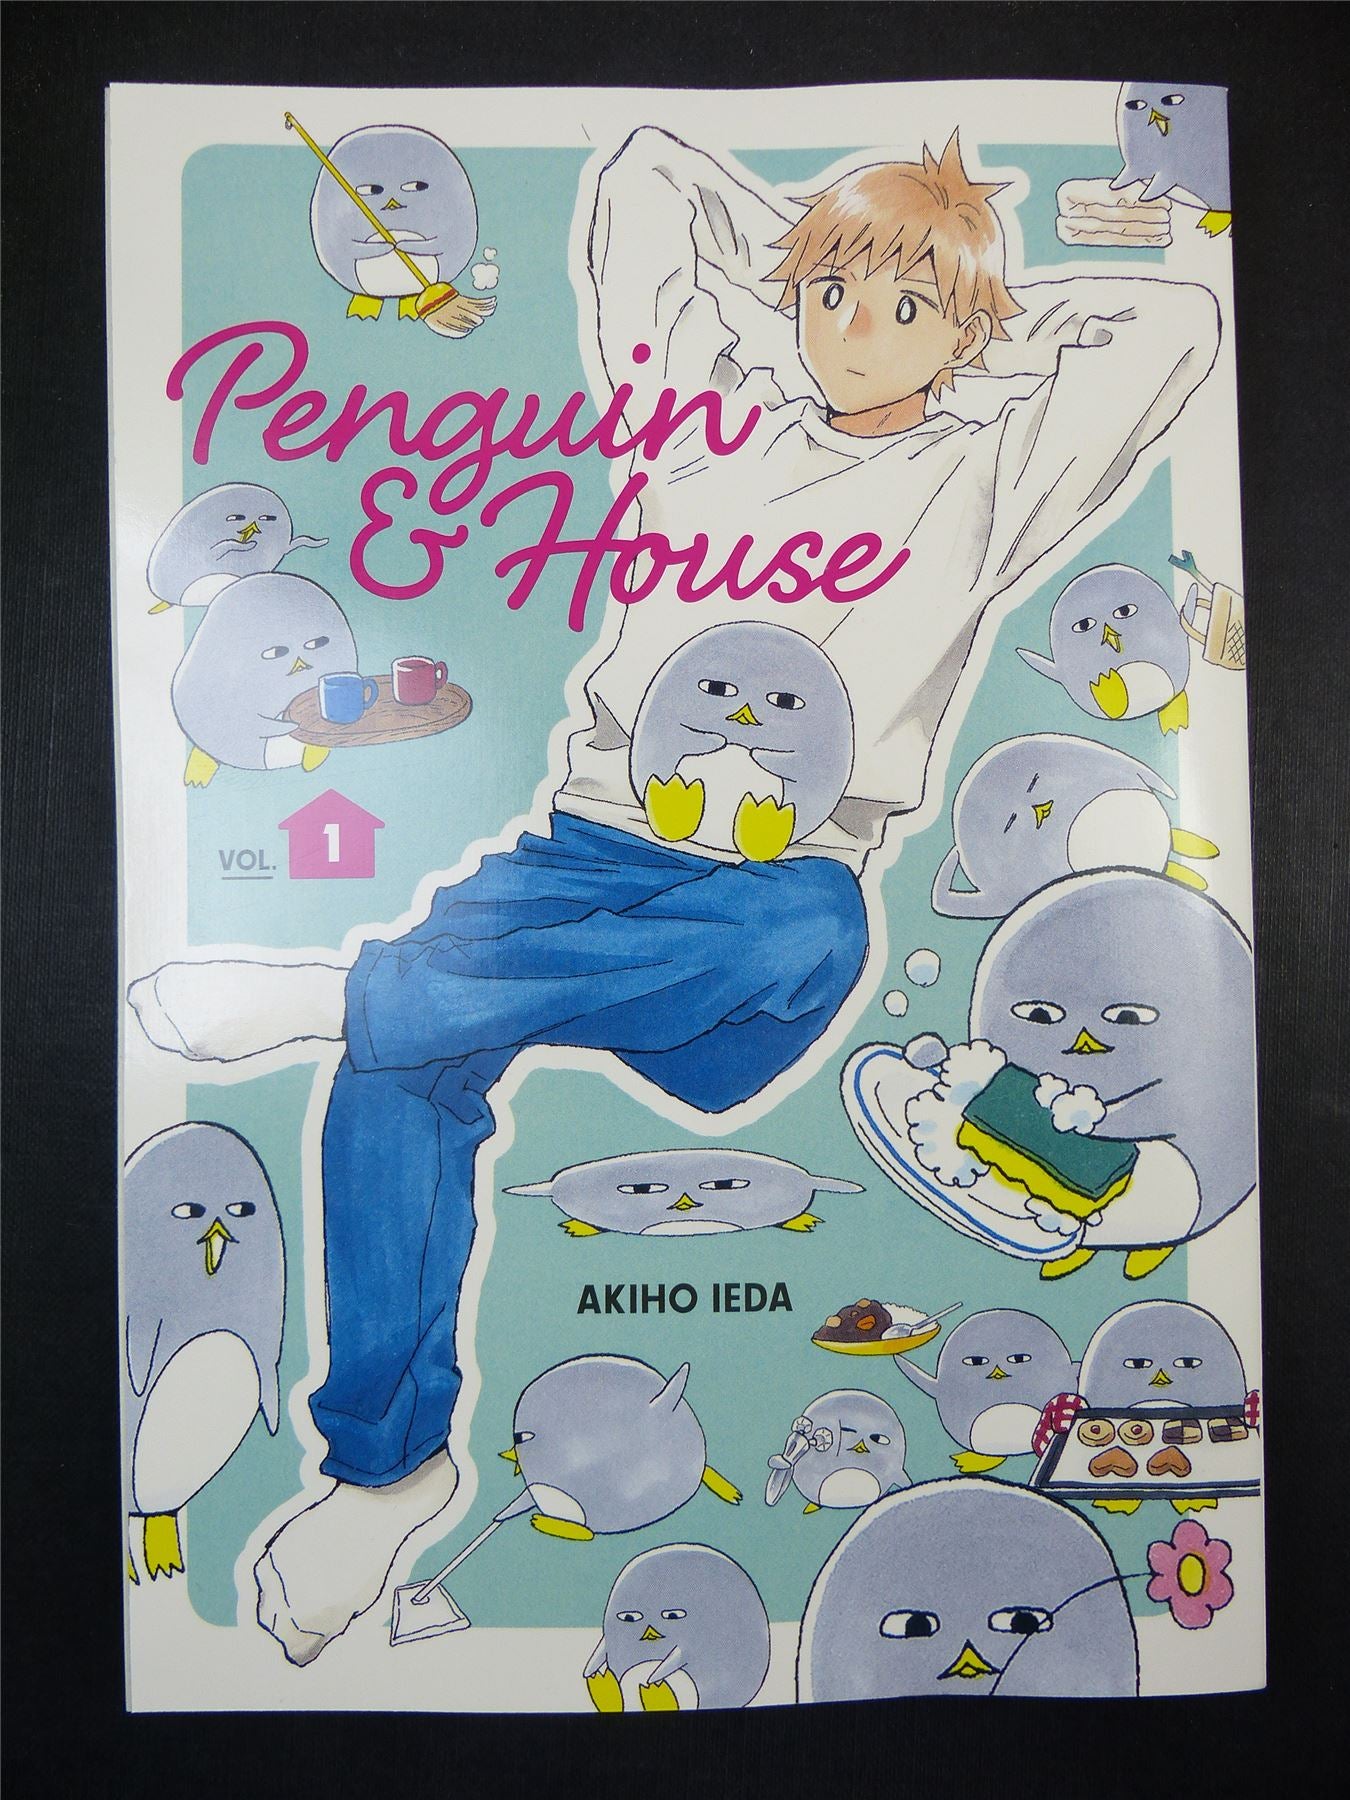 PENGUIN & House Vol 1 - Akiho Ieda Manga #9X2